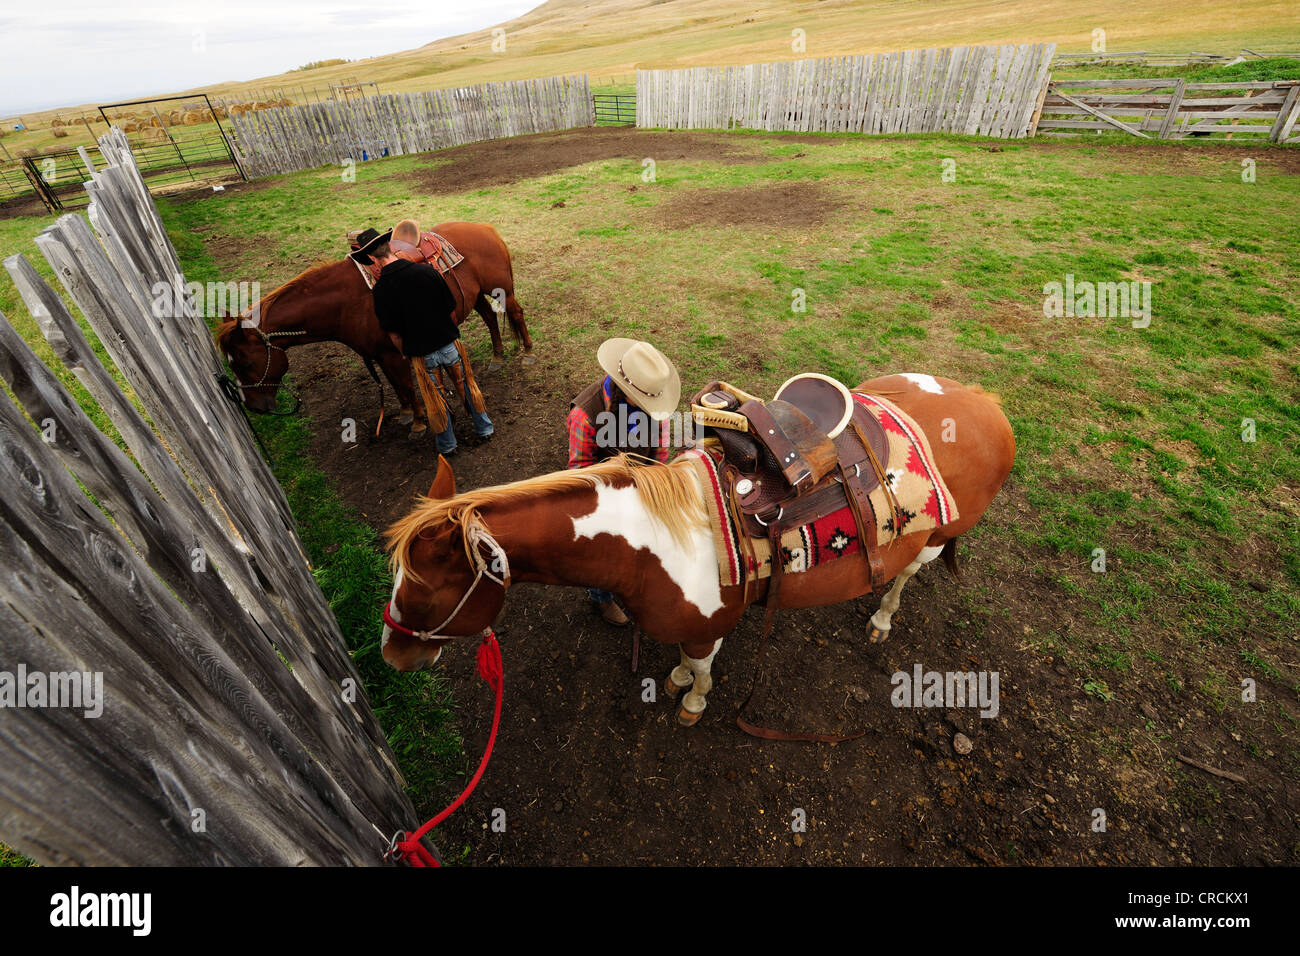 Cowboy und Cowgirl satteln ihre Pferde, Saskatchewan, Kanada, Nordamerika Stockfoto